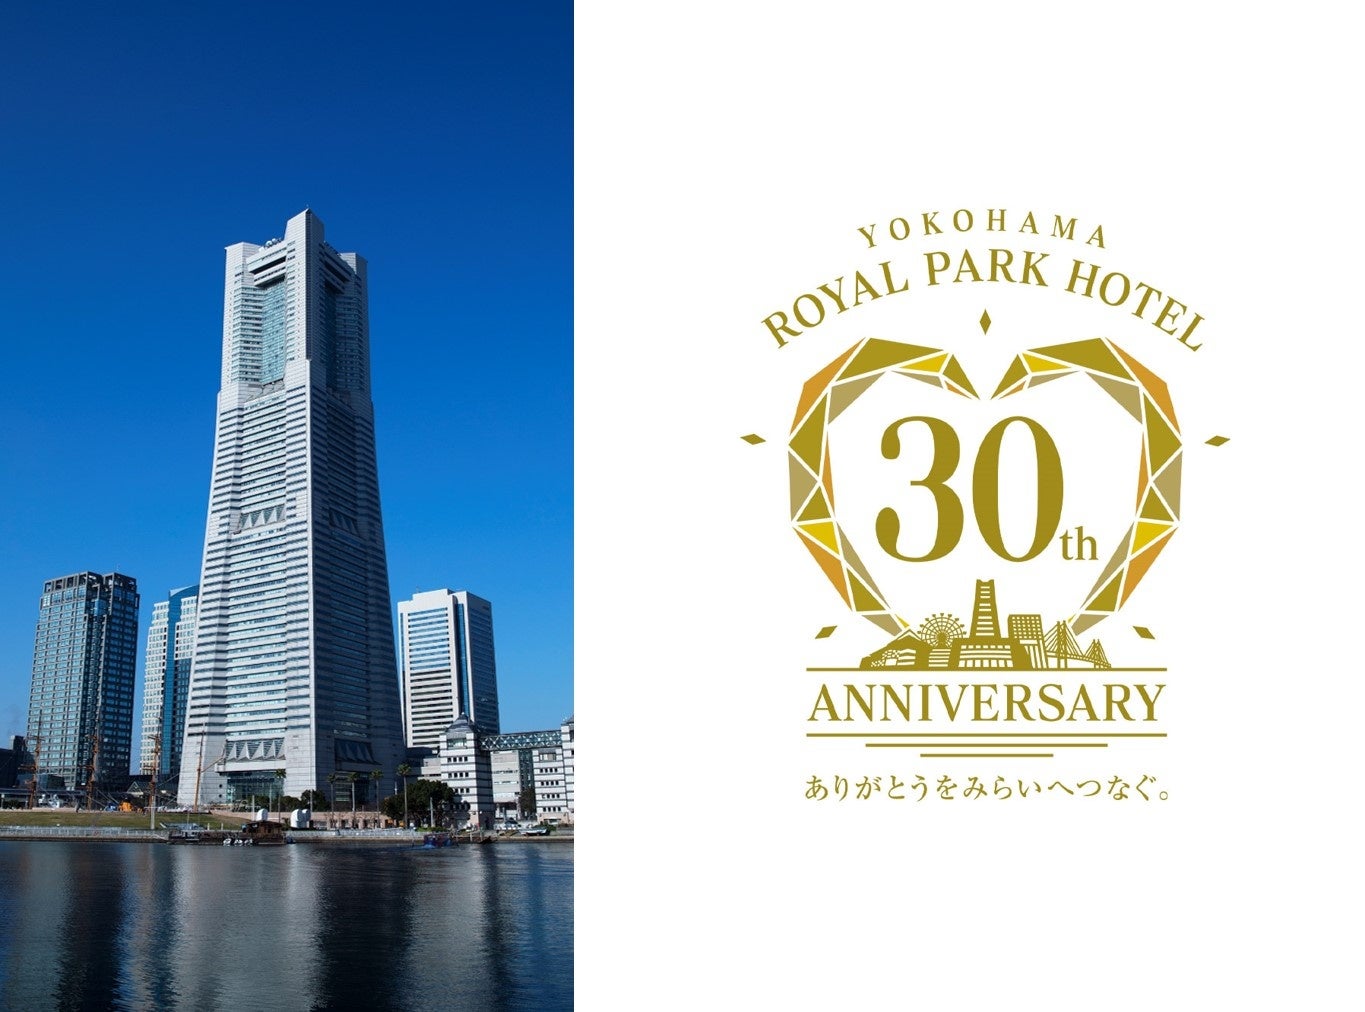 おかげさまで横浜ロイヤルパークホテルは、今年の9月15日に開業30周年を迎えます